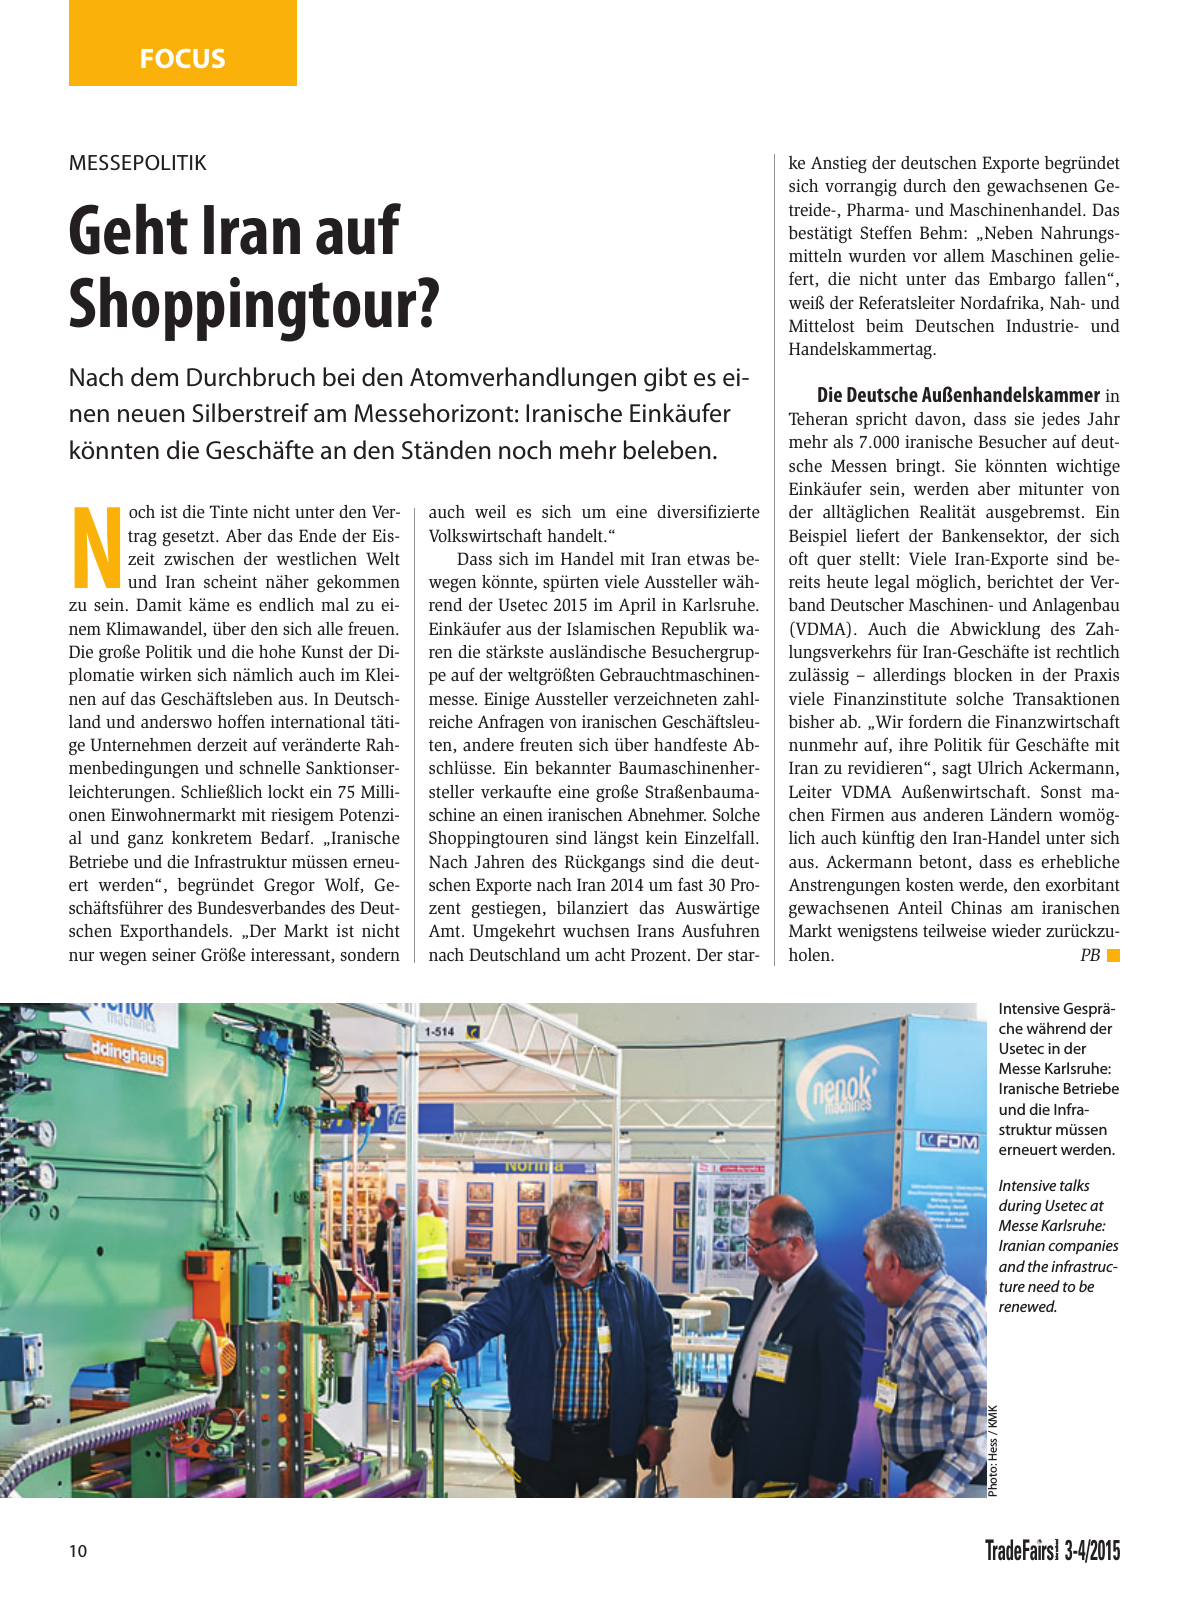 Vorschau TFI Trade-Fairs-International 03-04/2015 Seite 10